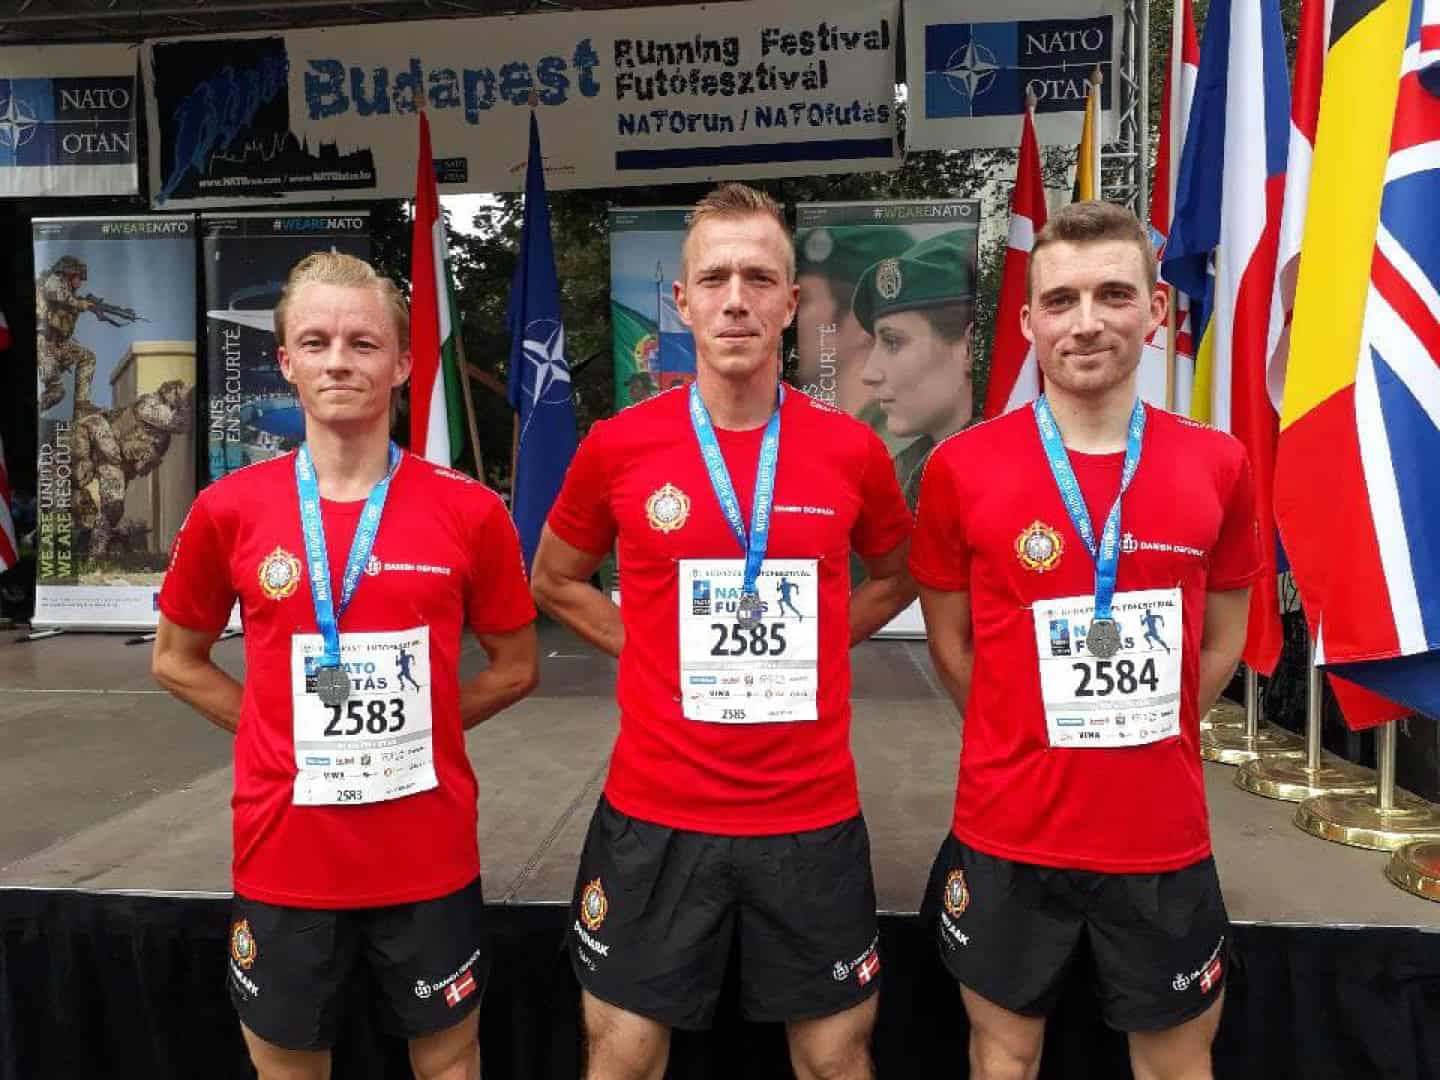 Anders løb for Nato Run i Budapest ugeavisen.dk